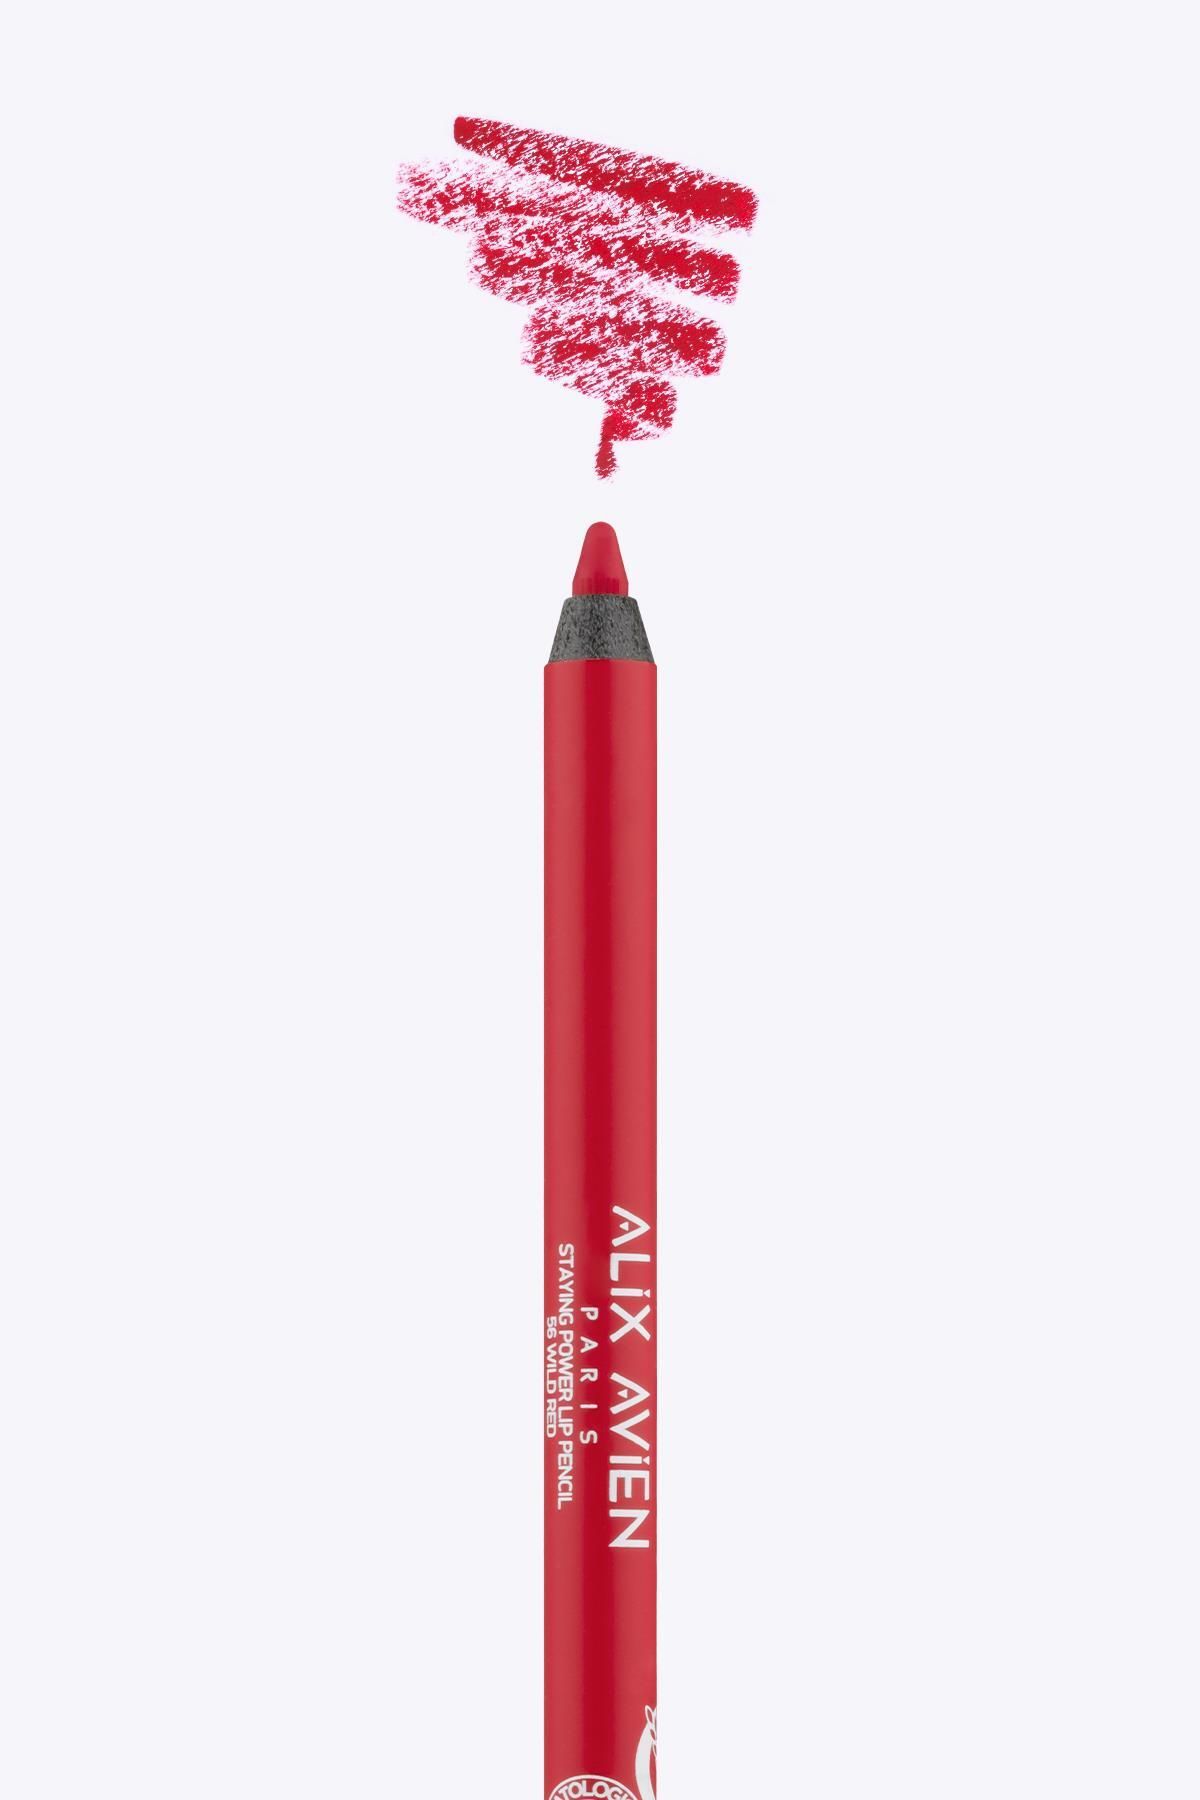 Alix Avien Uzun Süre Kalıcı Suya Dayanıklı Dudak Kalemi - Staying Power Lip Pencil 56 Wild Red